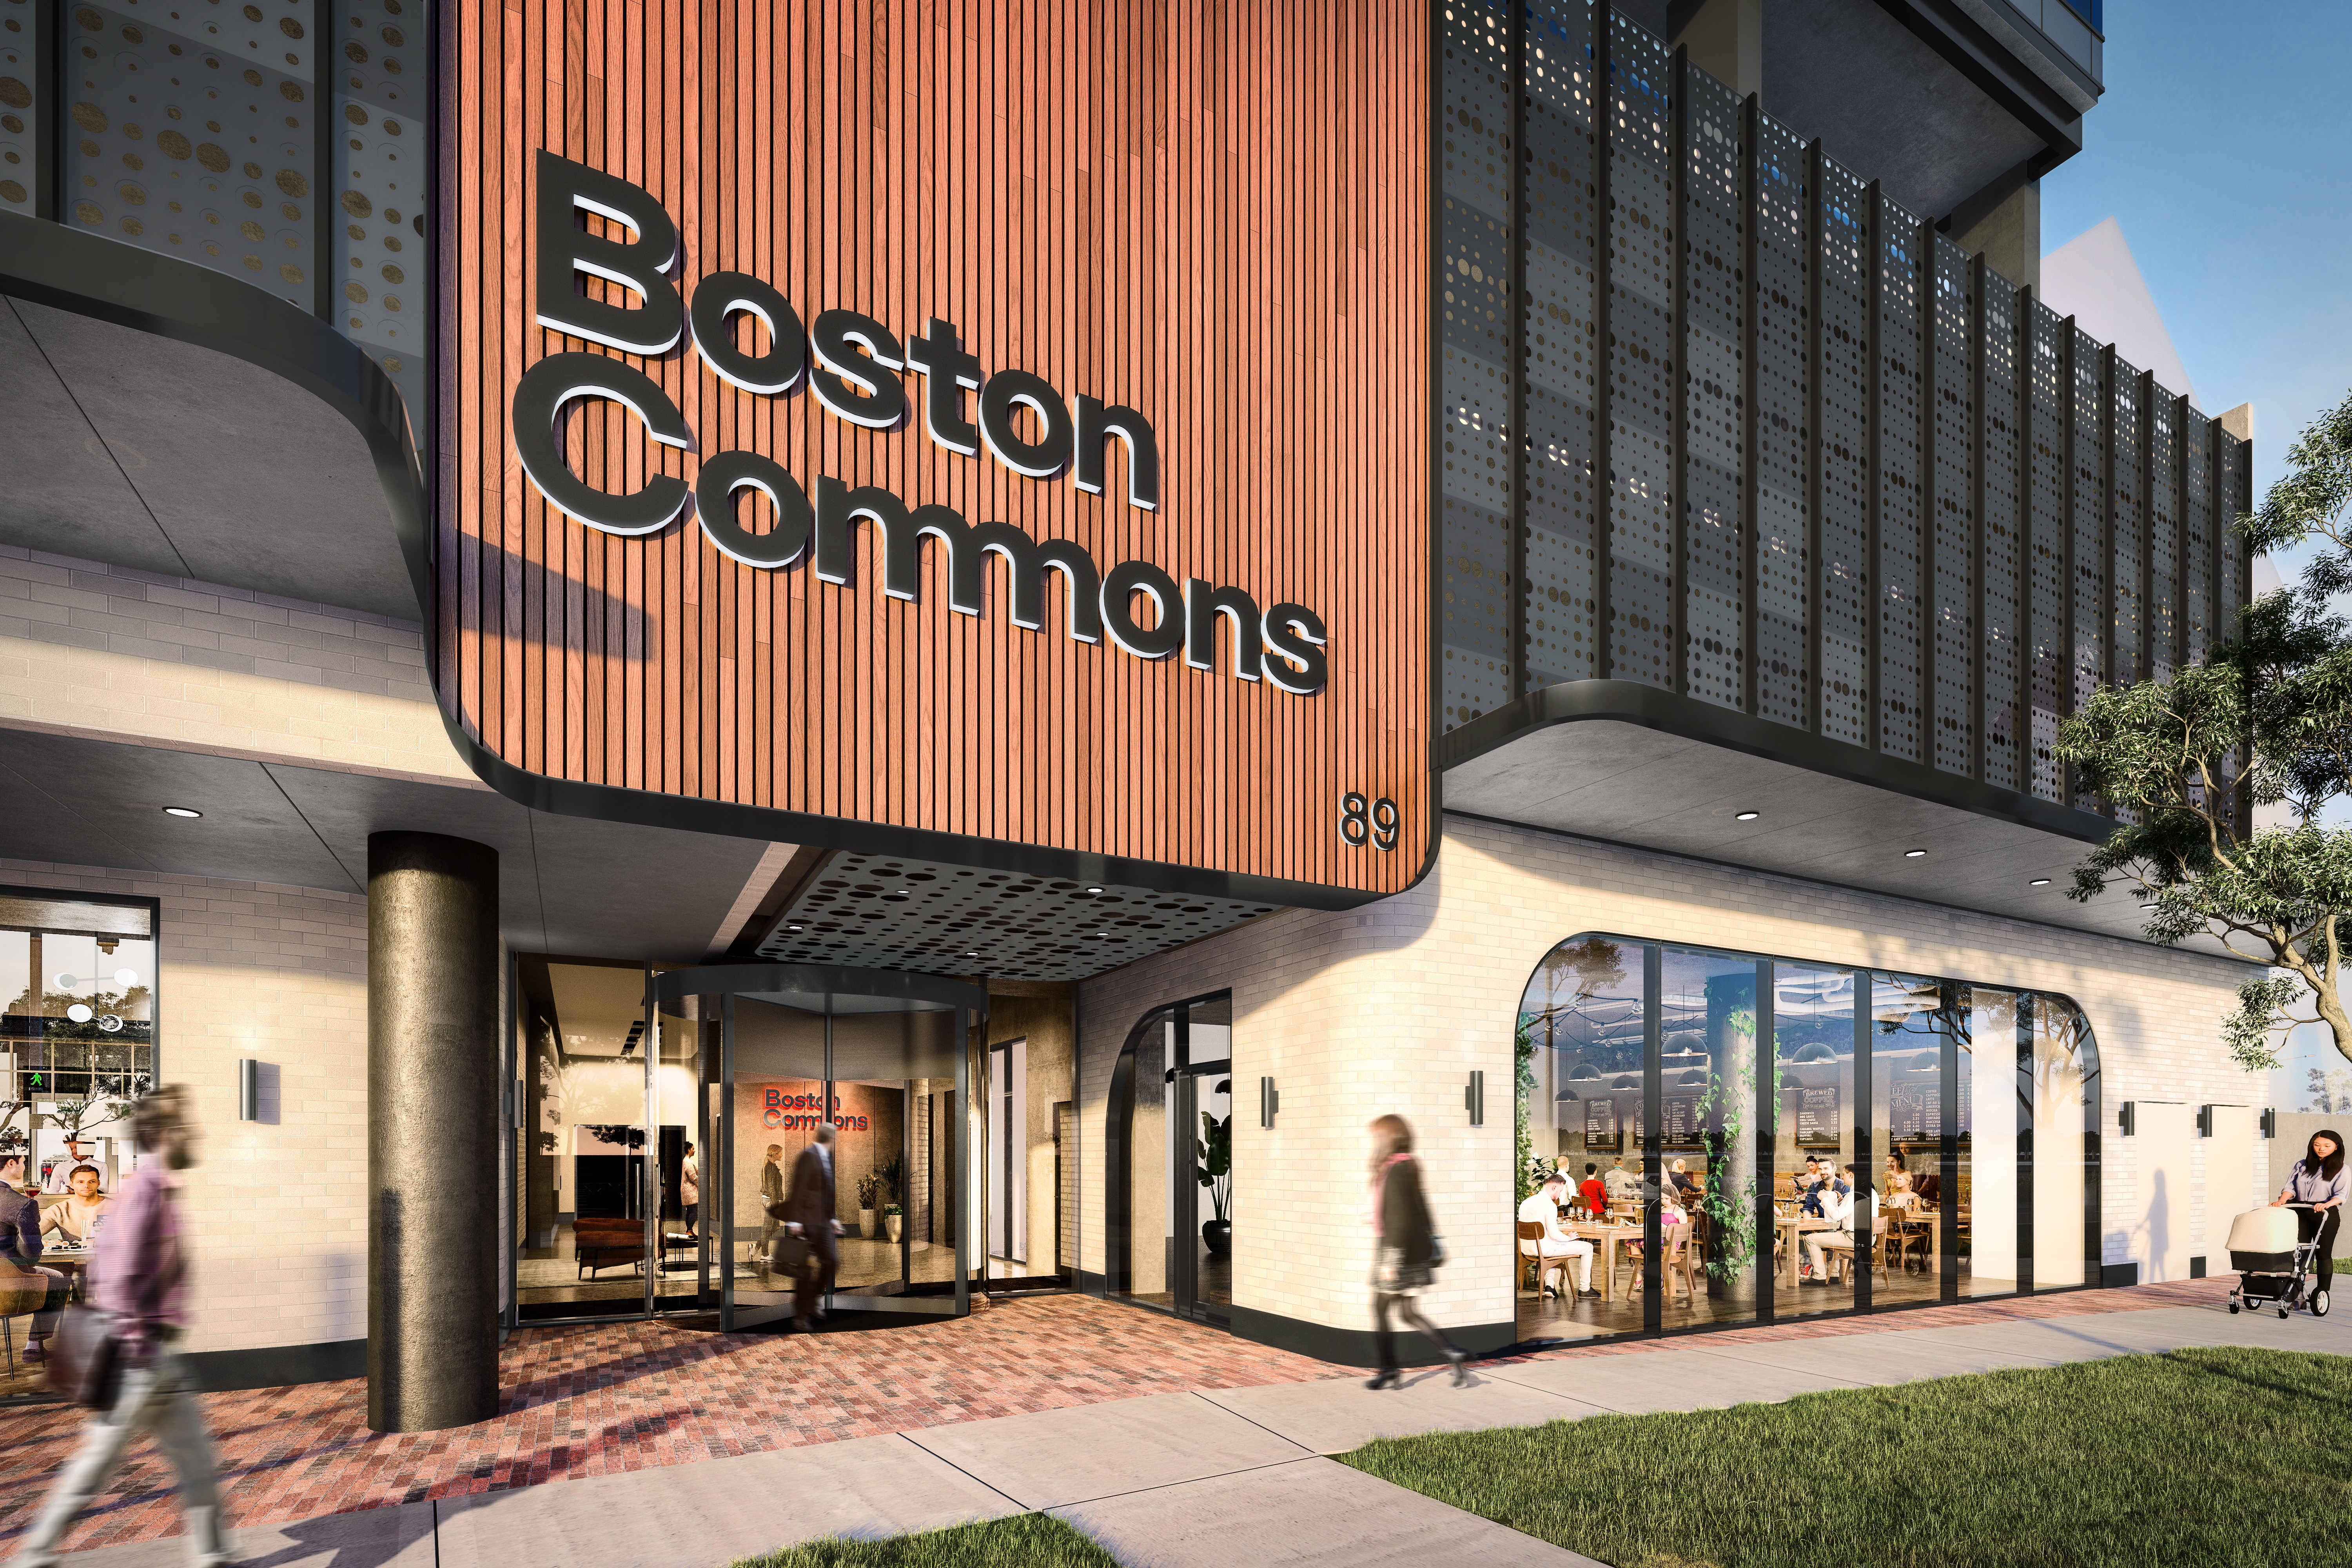 Boston Commons